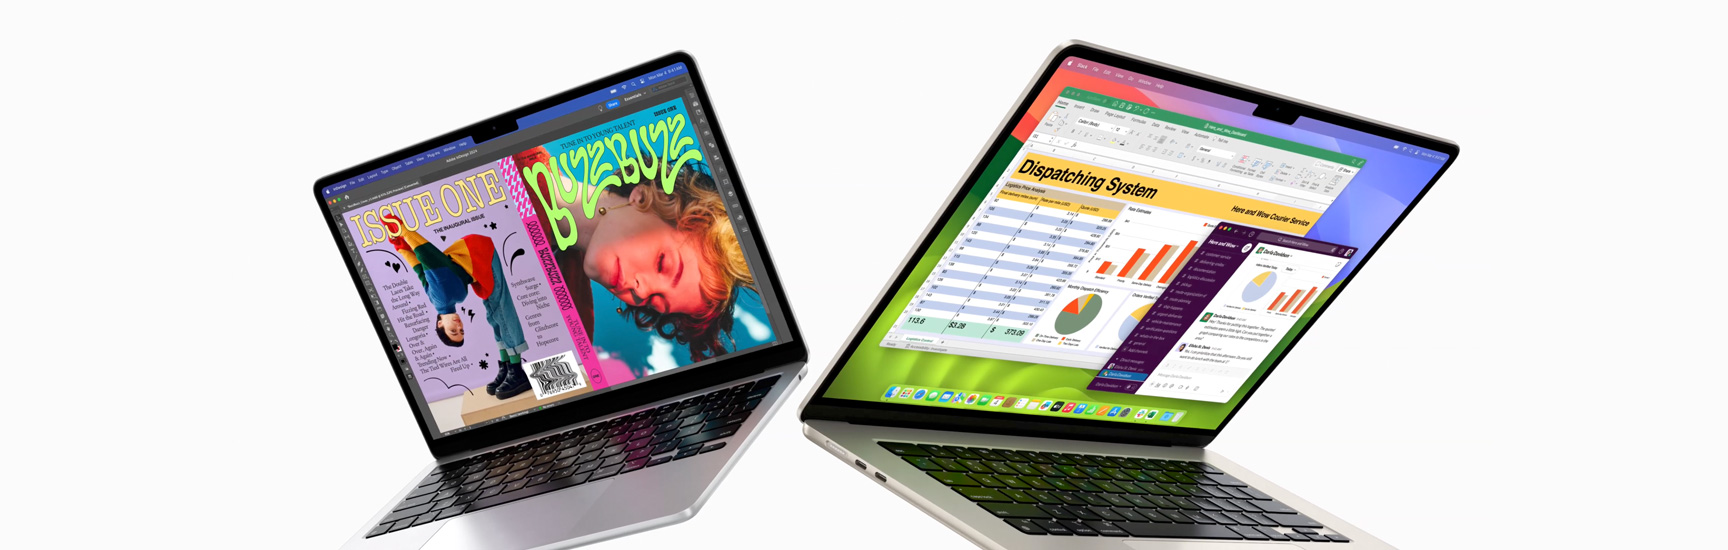 MacBook Air de 13 polegadas à esquerda e MacBook Air de 15 polegadas à direita parcialmente abertos. A tela de 13 polegadas mostra uma capa de revista colorida criada no In Design. A tela de 15 polegadas mostra o Microsoft Excel e o Slack.